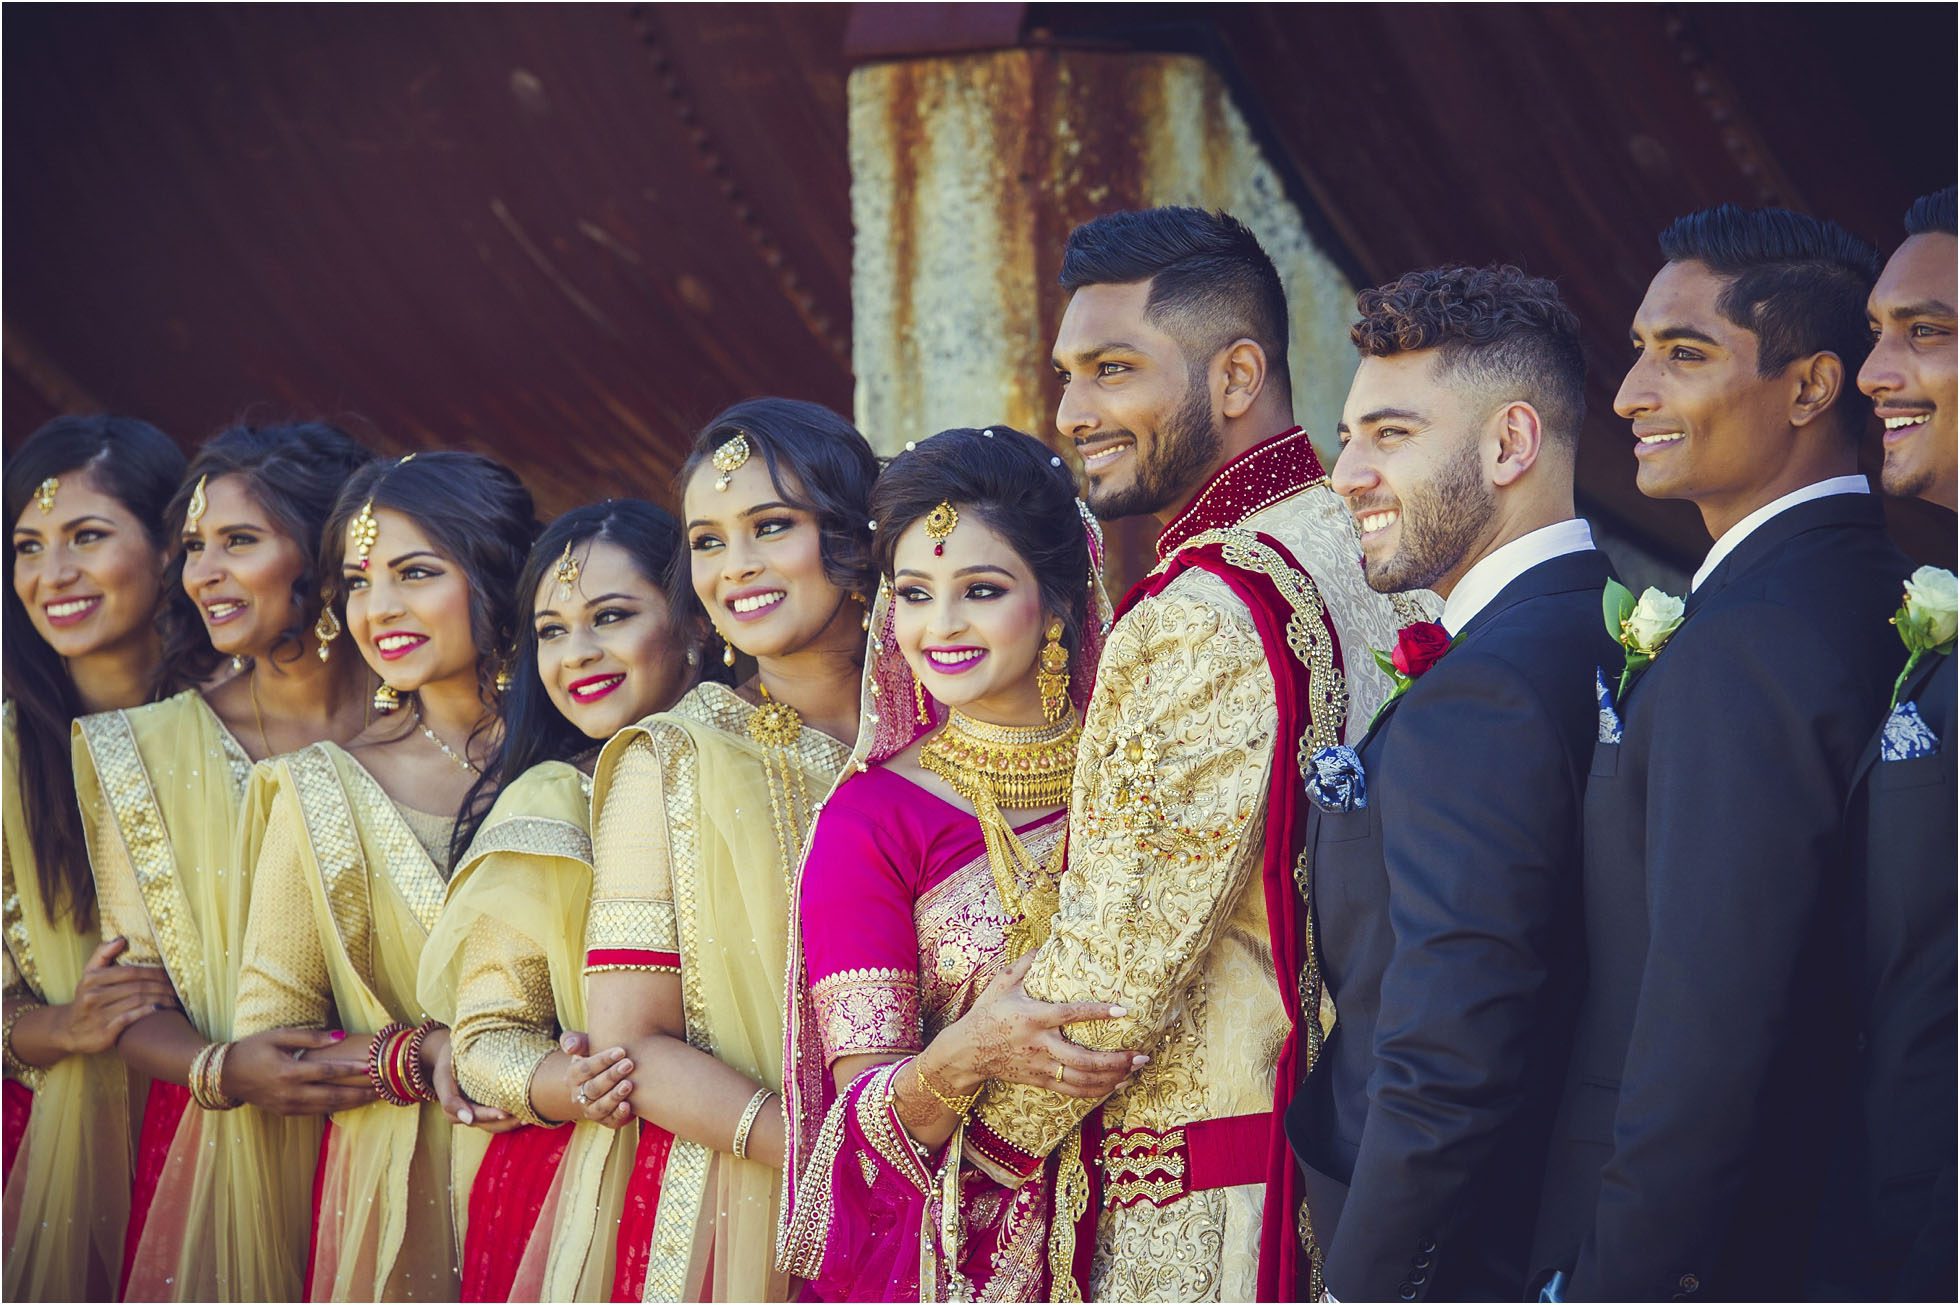 Bangladeshi Wedding Photographer Sydney Australia